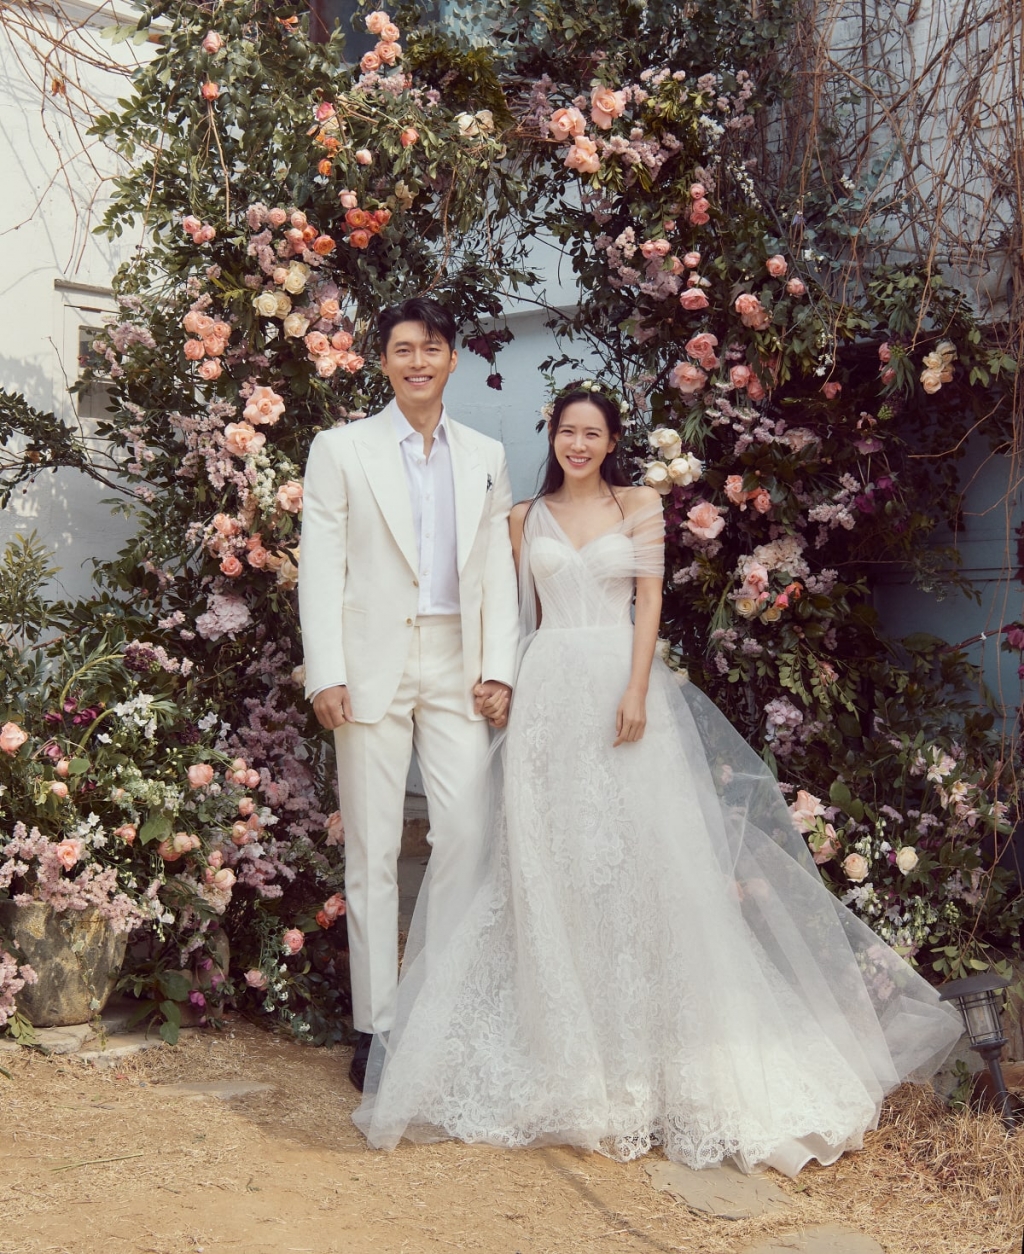 Netizen ‘soi’ điểm khác biệt giữa ảnh cưới của Hyun Bin – Son Ye Jin với cặp đôi Song – Song